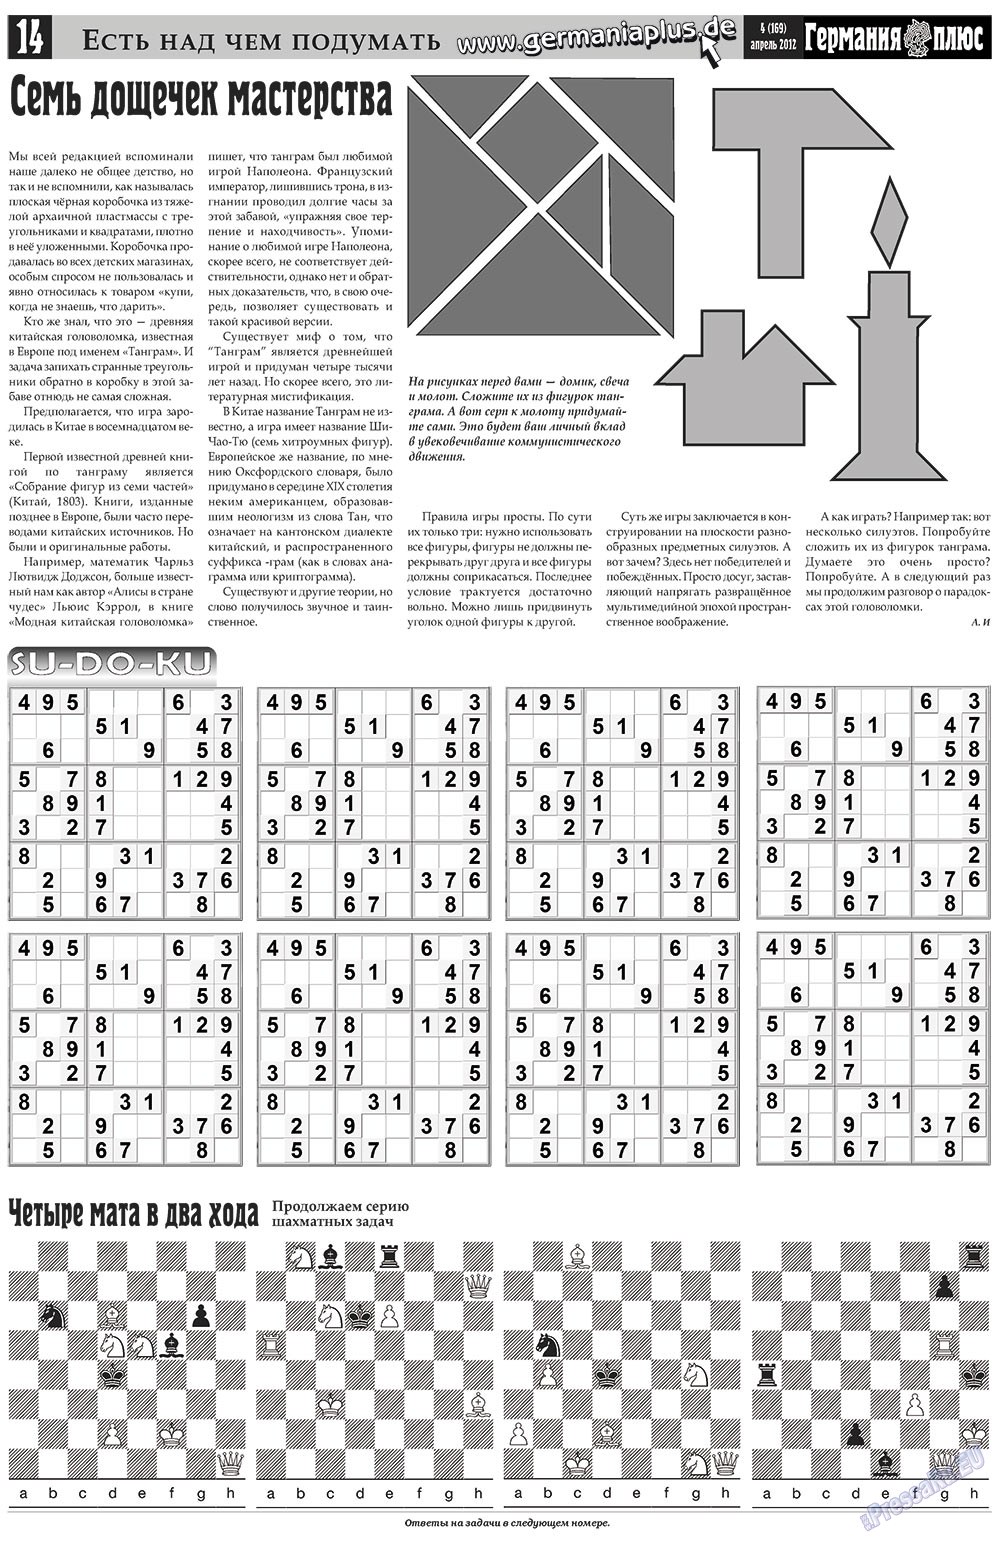 Германия плюс, газета. 2012 №4 стр.14